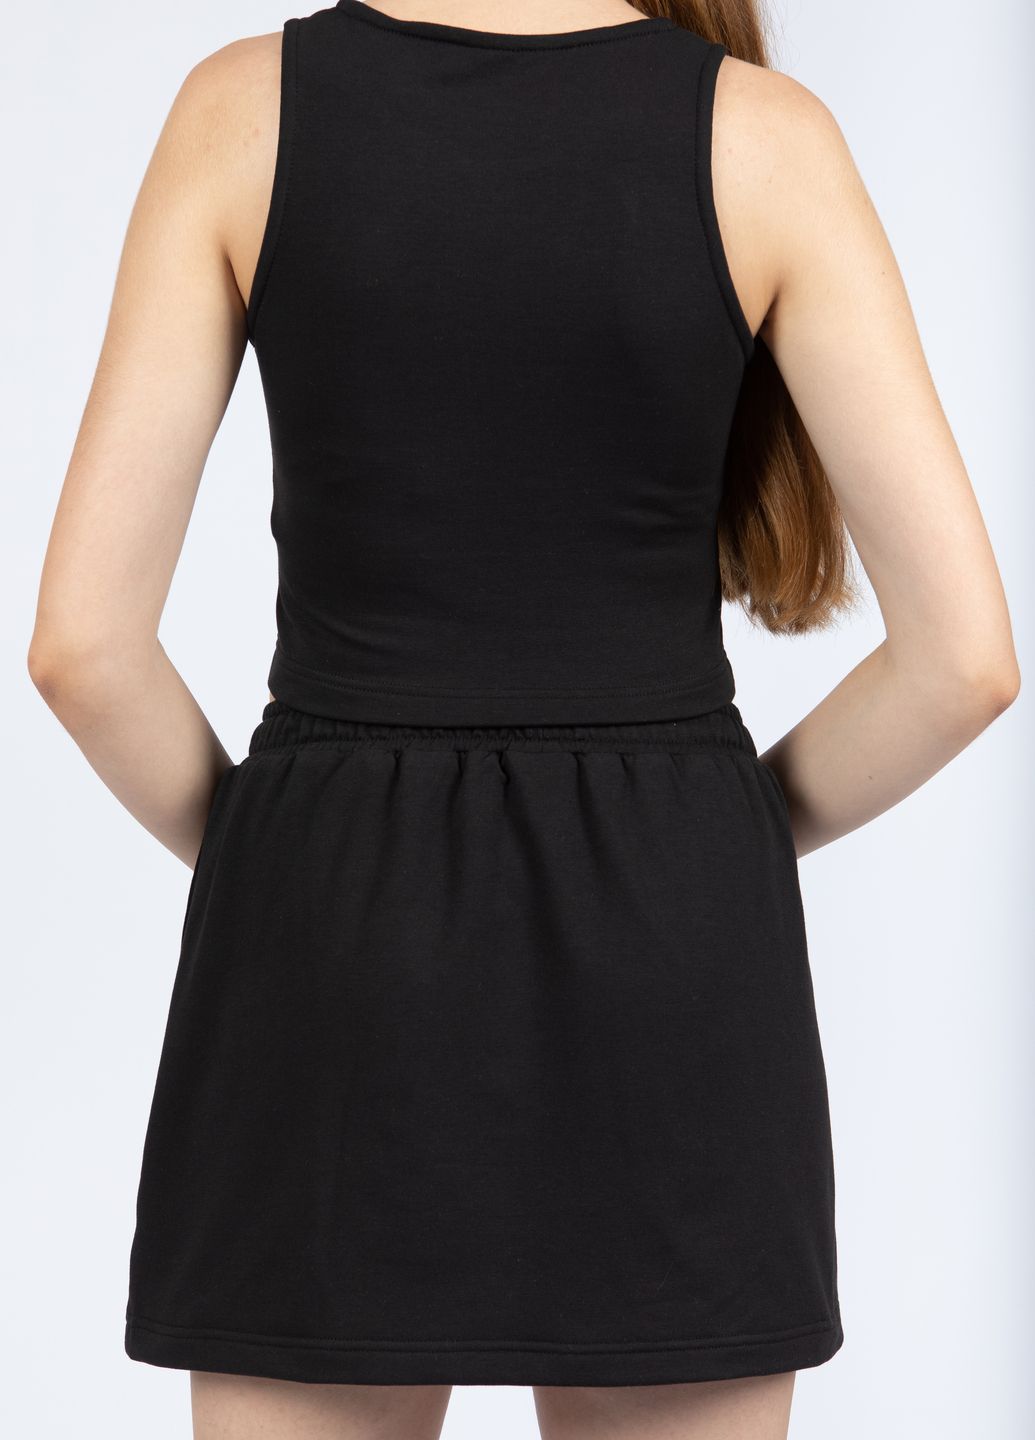 Купить Мини юбка Merlini Кале 400000006 - Черный, 42-44 в интернет-магазине